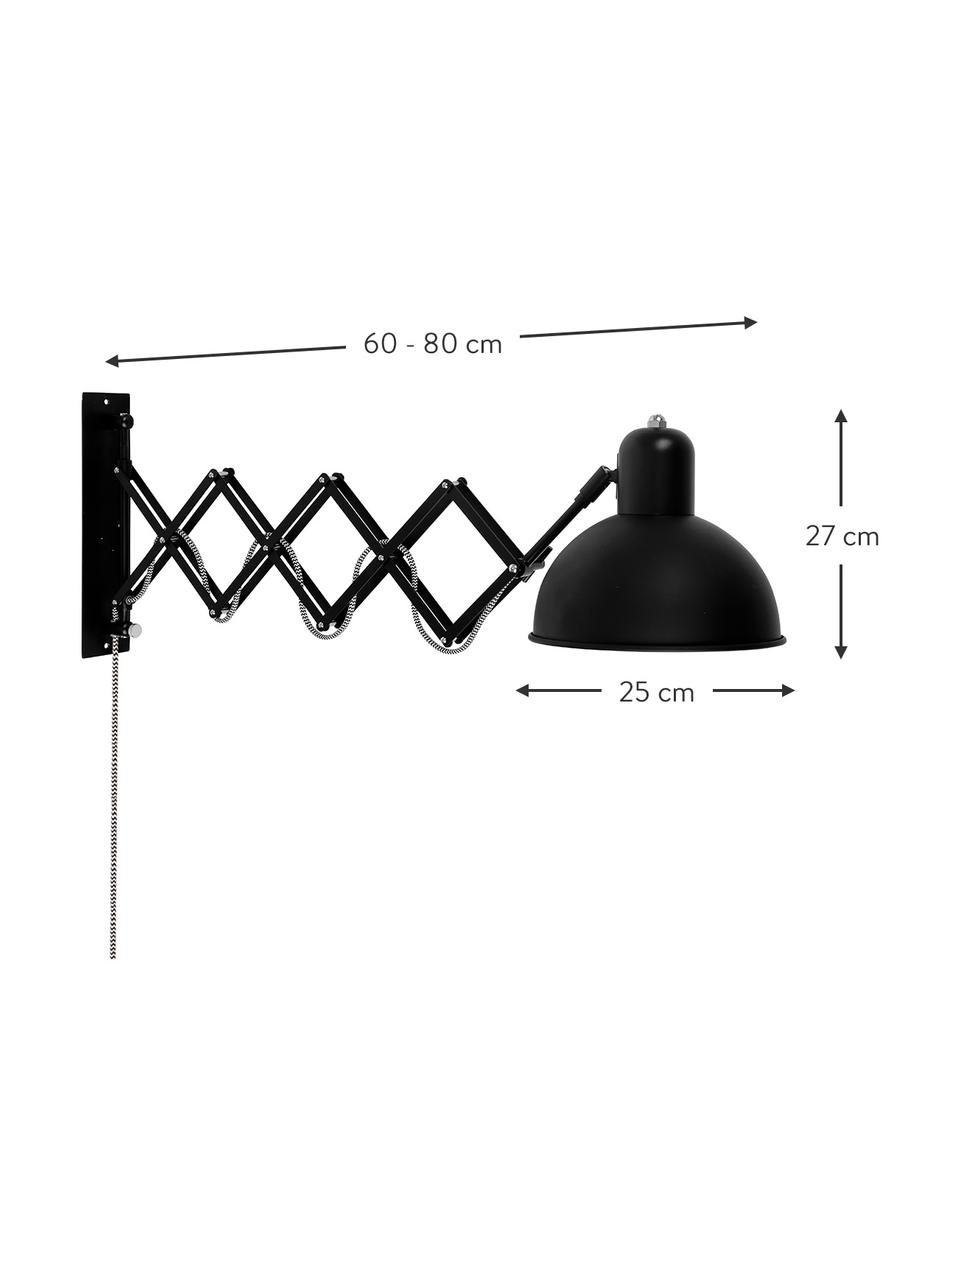 Velké vysouvací nástěnné svítidlo Aberdeen se zástrčkou, Černá, H 60 cm, V 27 cm